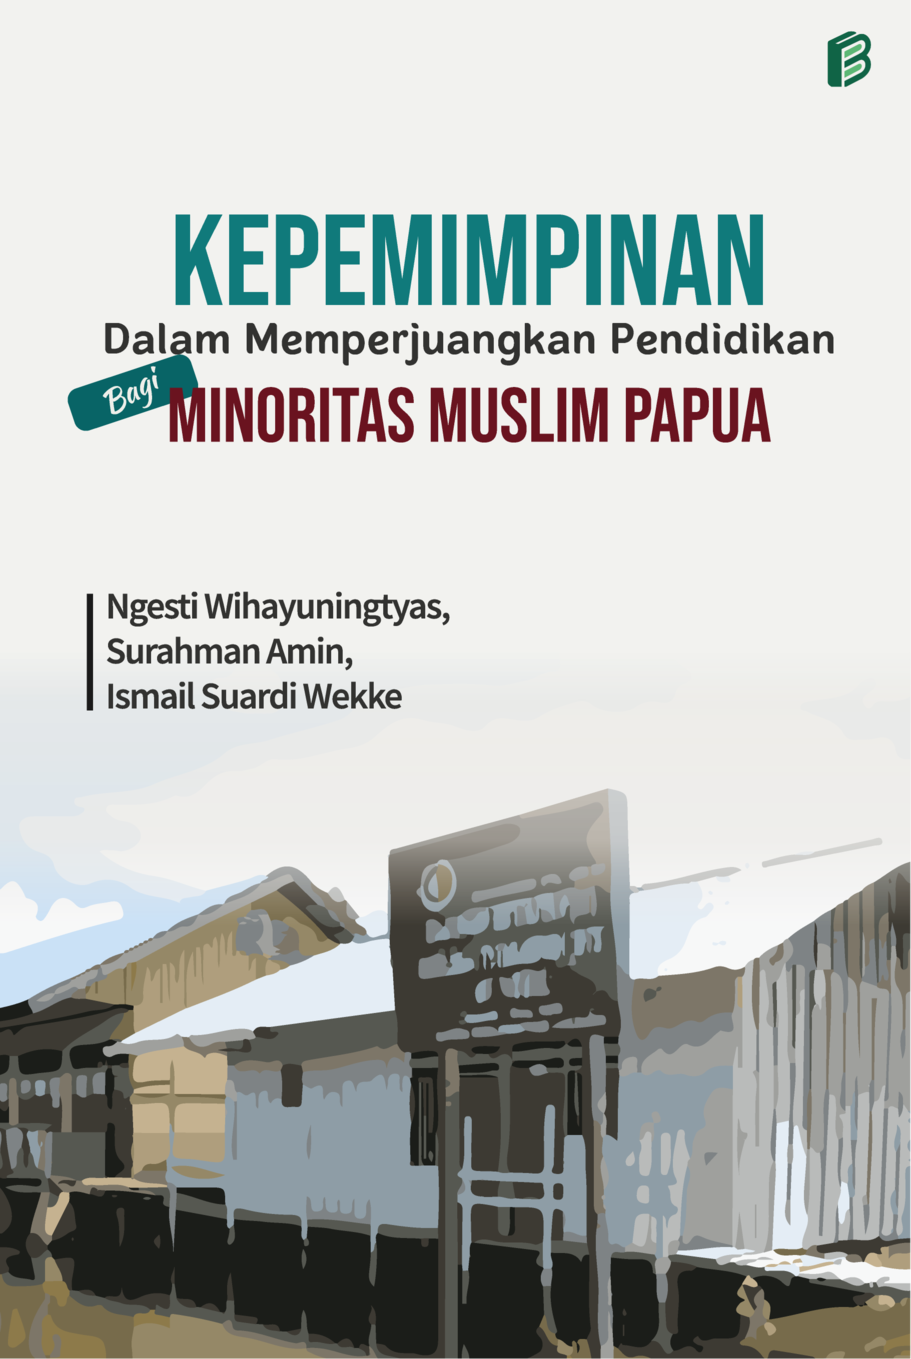 cover/(12-10-2022)kepemimpinan-dalam-memperjuangkan-pendidikan-bagi-minoritas-muslim-papua.png